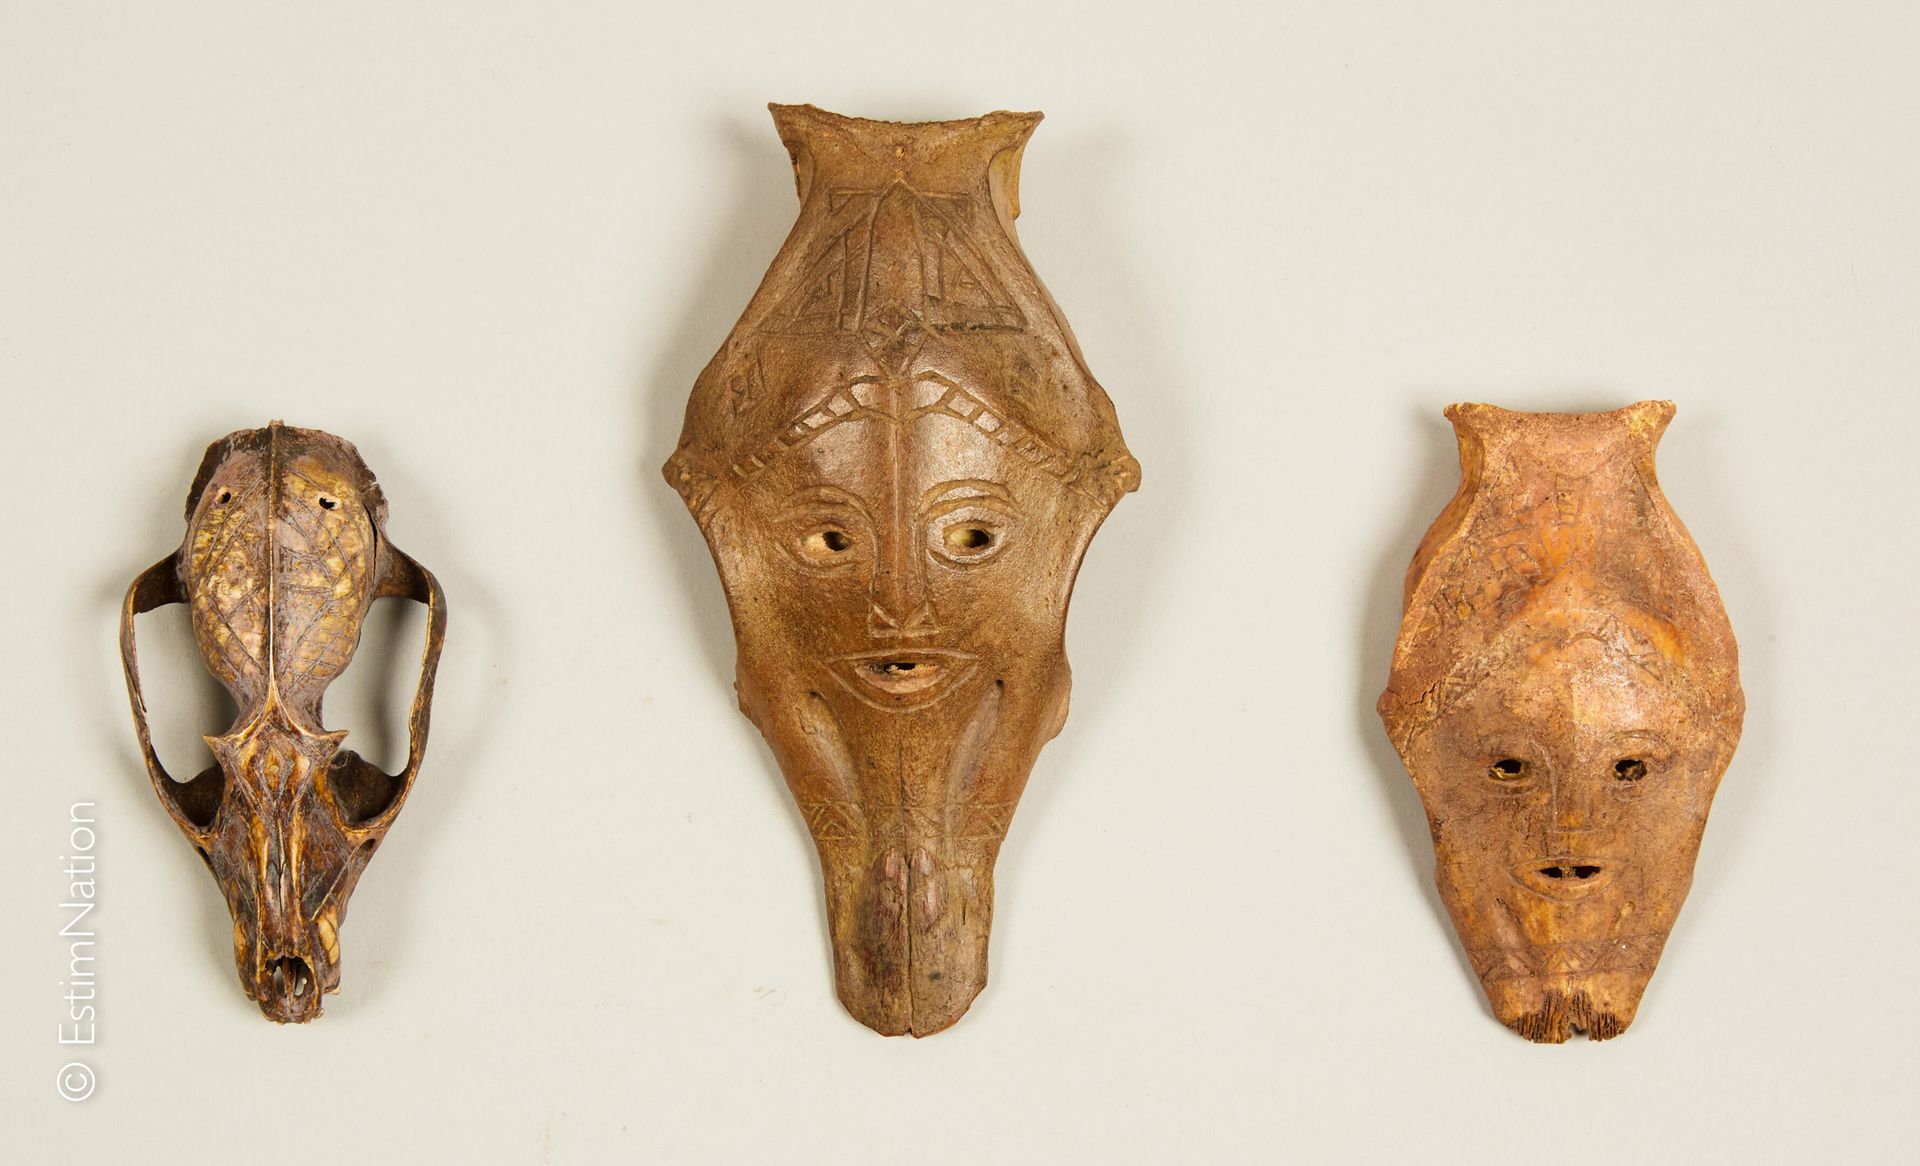 TIMOR - ATONI TIMOR - ATONI



Riunione di tre piccole maschere in osso raffigur&hellip;